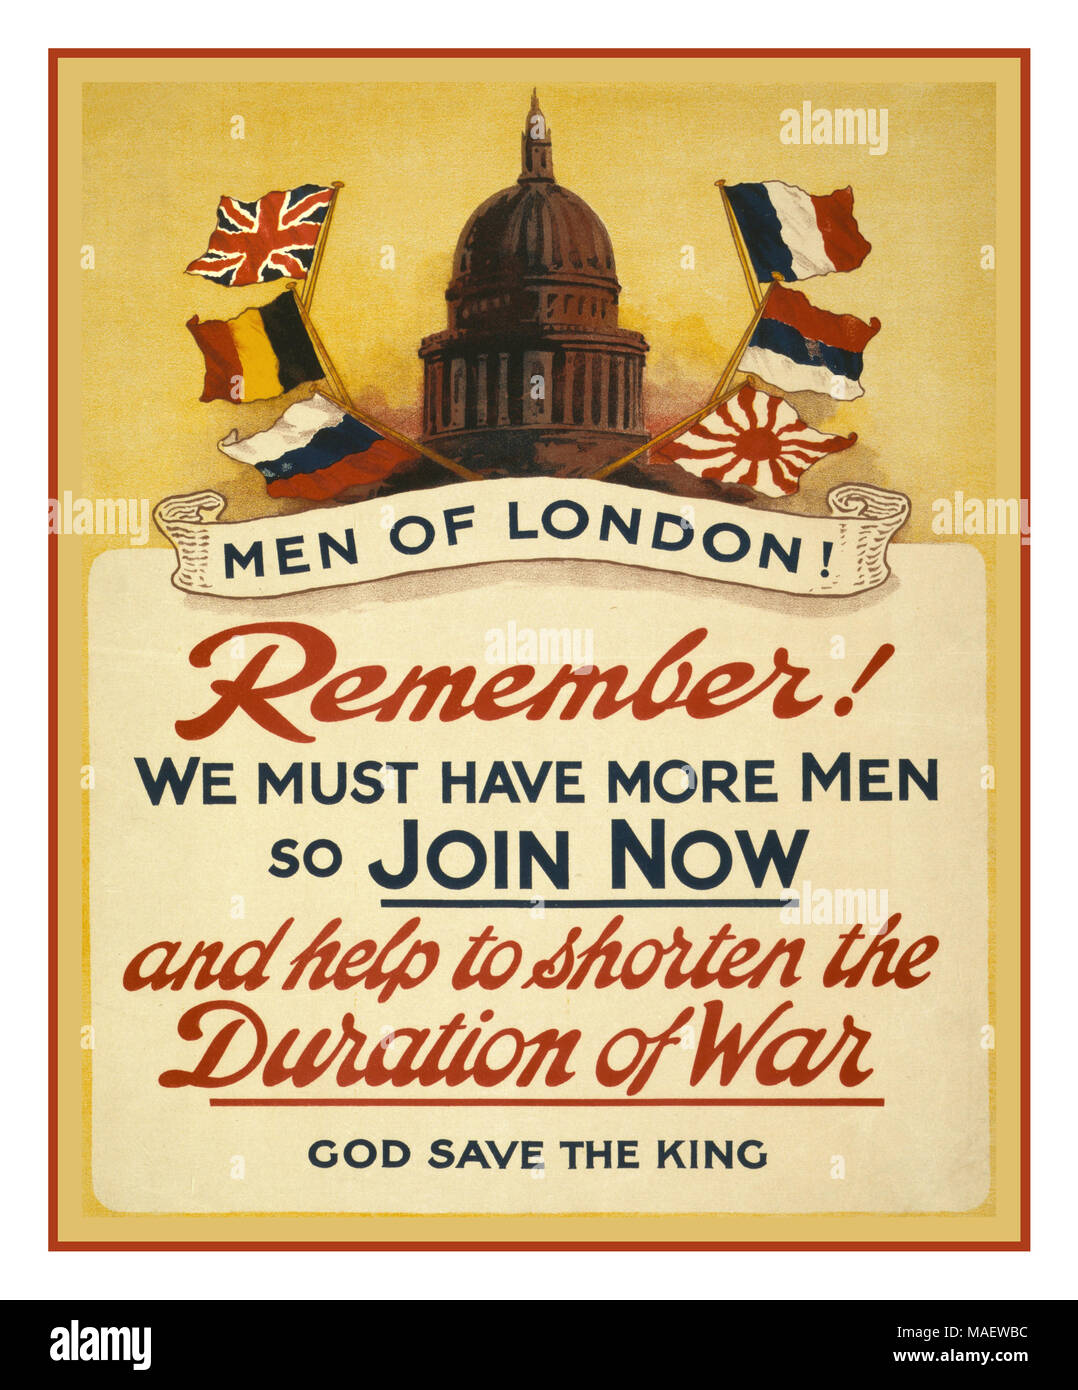 Vintage WW1 Recruitmen Poster 1915 "Männer von London! Denken Sie daran! Wir müssen mehr Männer so jetzt beitreten und die Dauer des Krieges zu verkürzen. God save the King"-Poster, auf dem die Kuppel der St. Paul's Cathedral, London, mit den Flaggen der Alliierten. Lithographie, 1915 Stockfoto